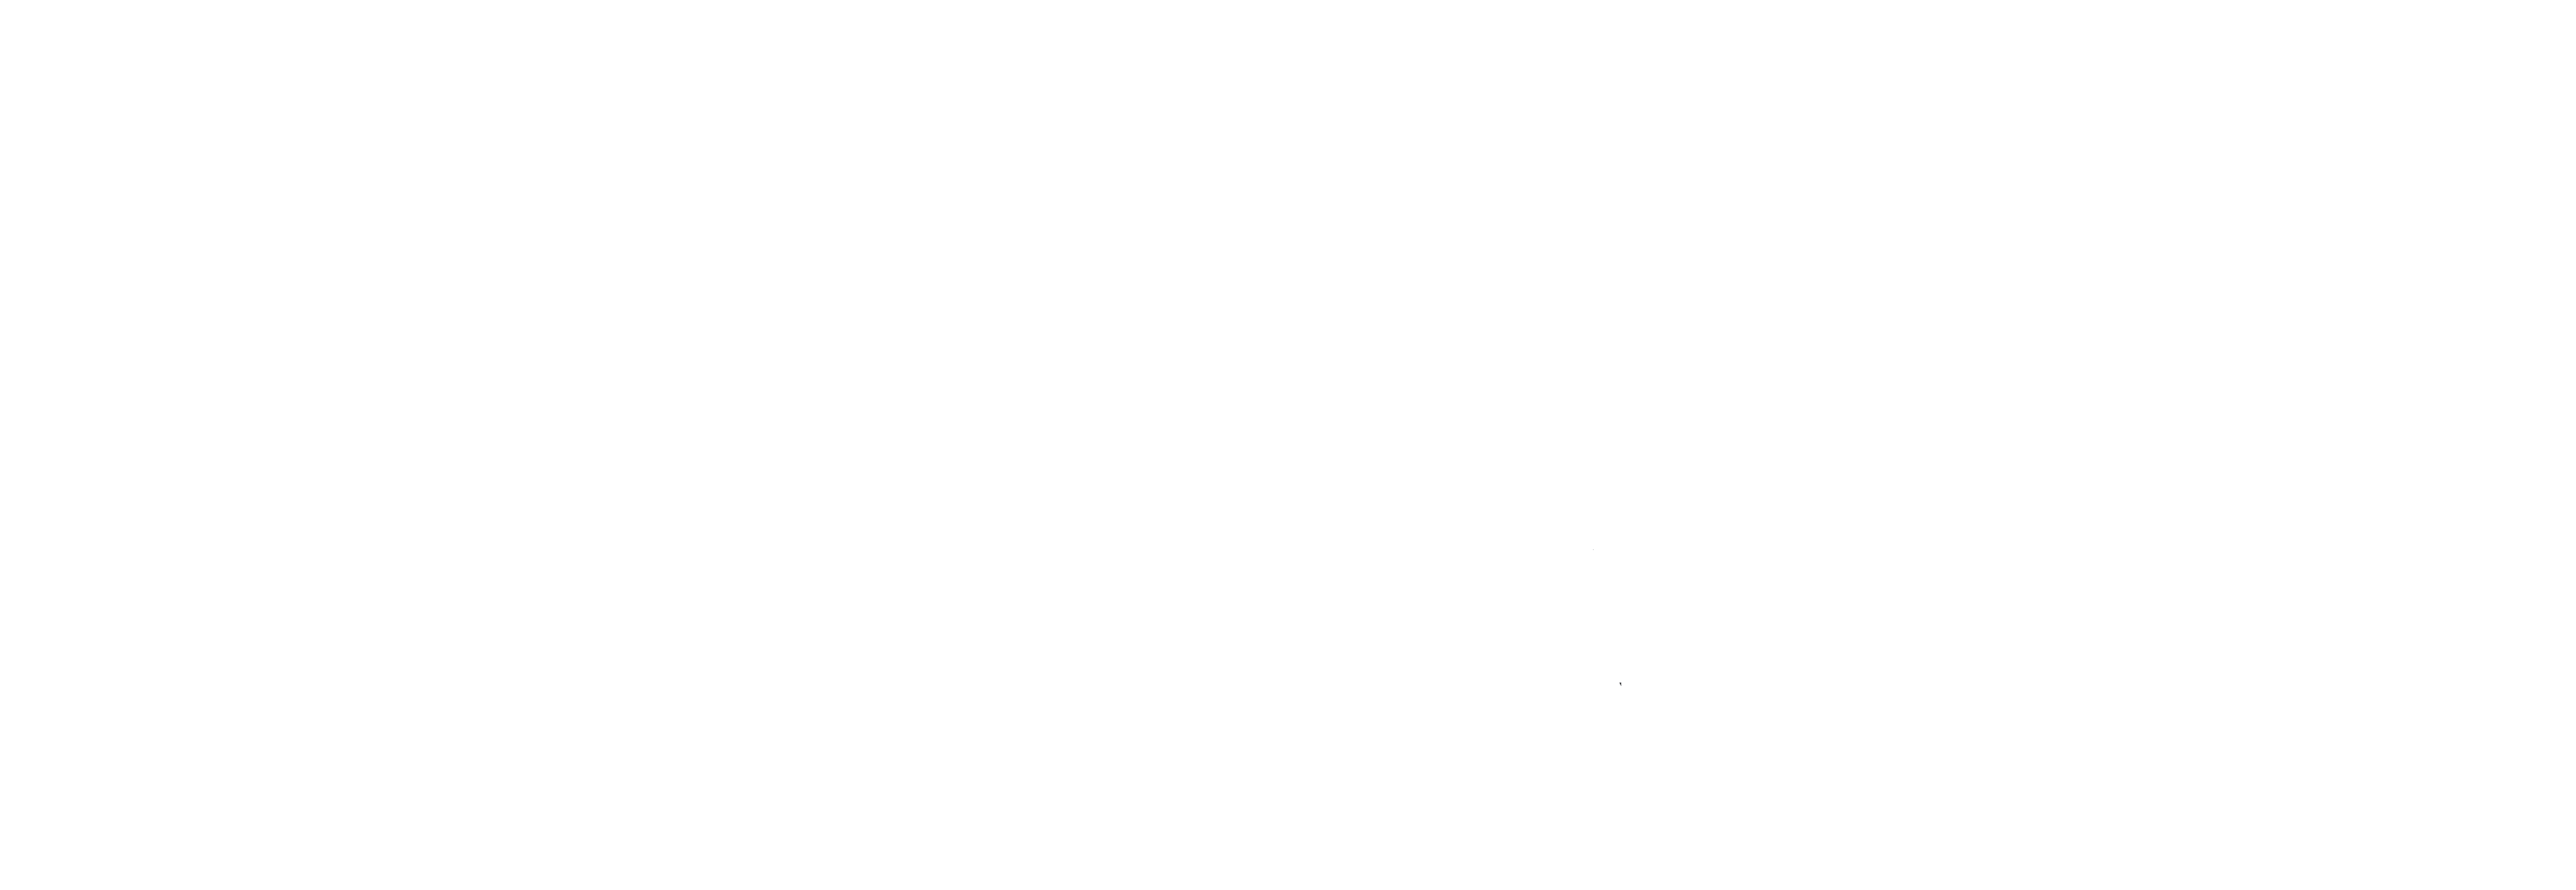 Inc. Magazine logo